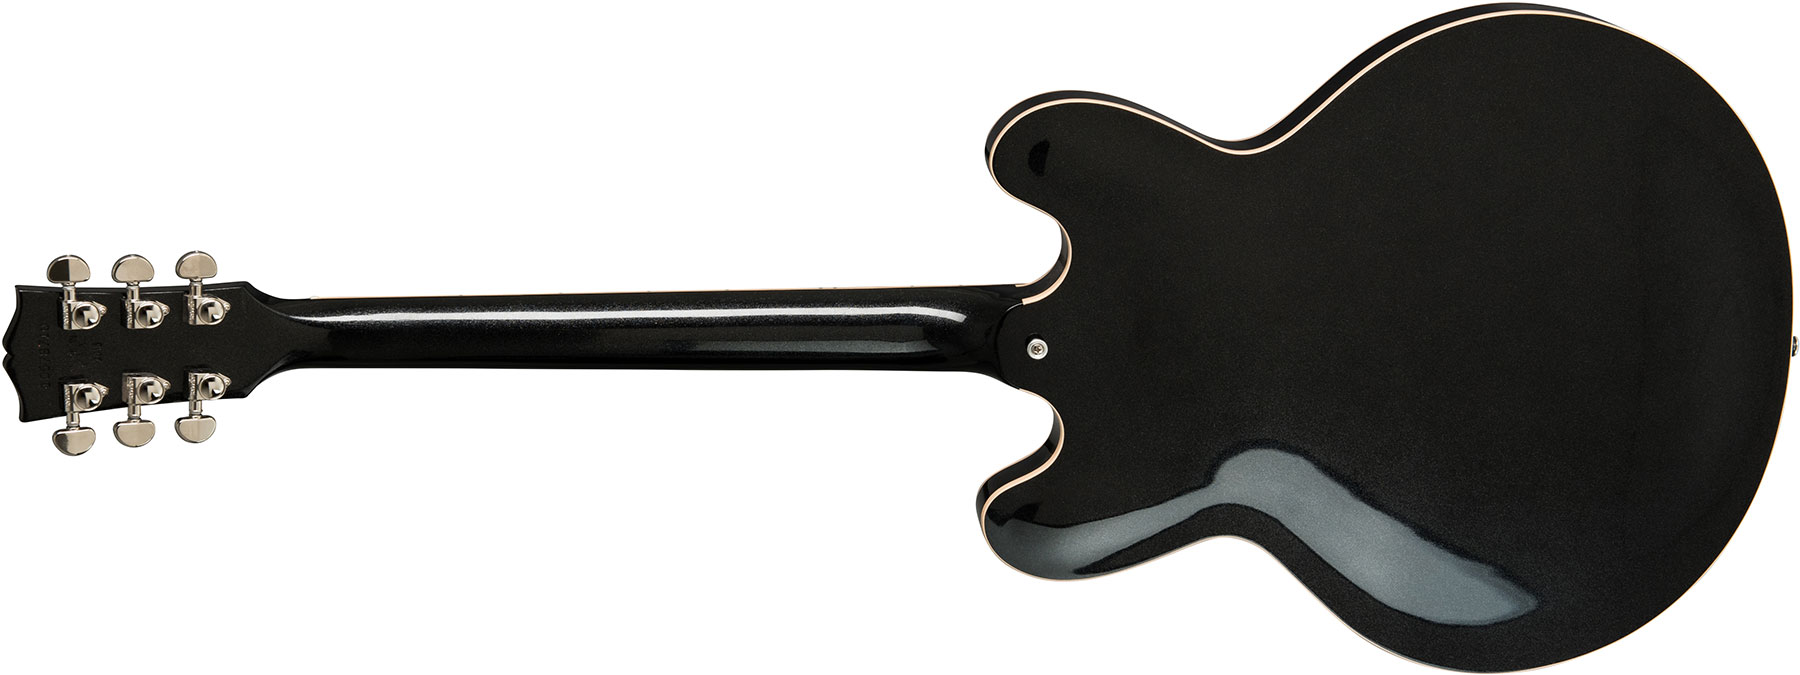 Gibson Es-335 Dot 2019 Hh Ht Rw - Graphite Metallic - Semi-Hollow E-Gitarre - Variation 2